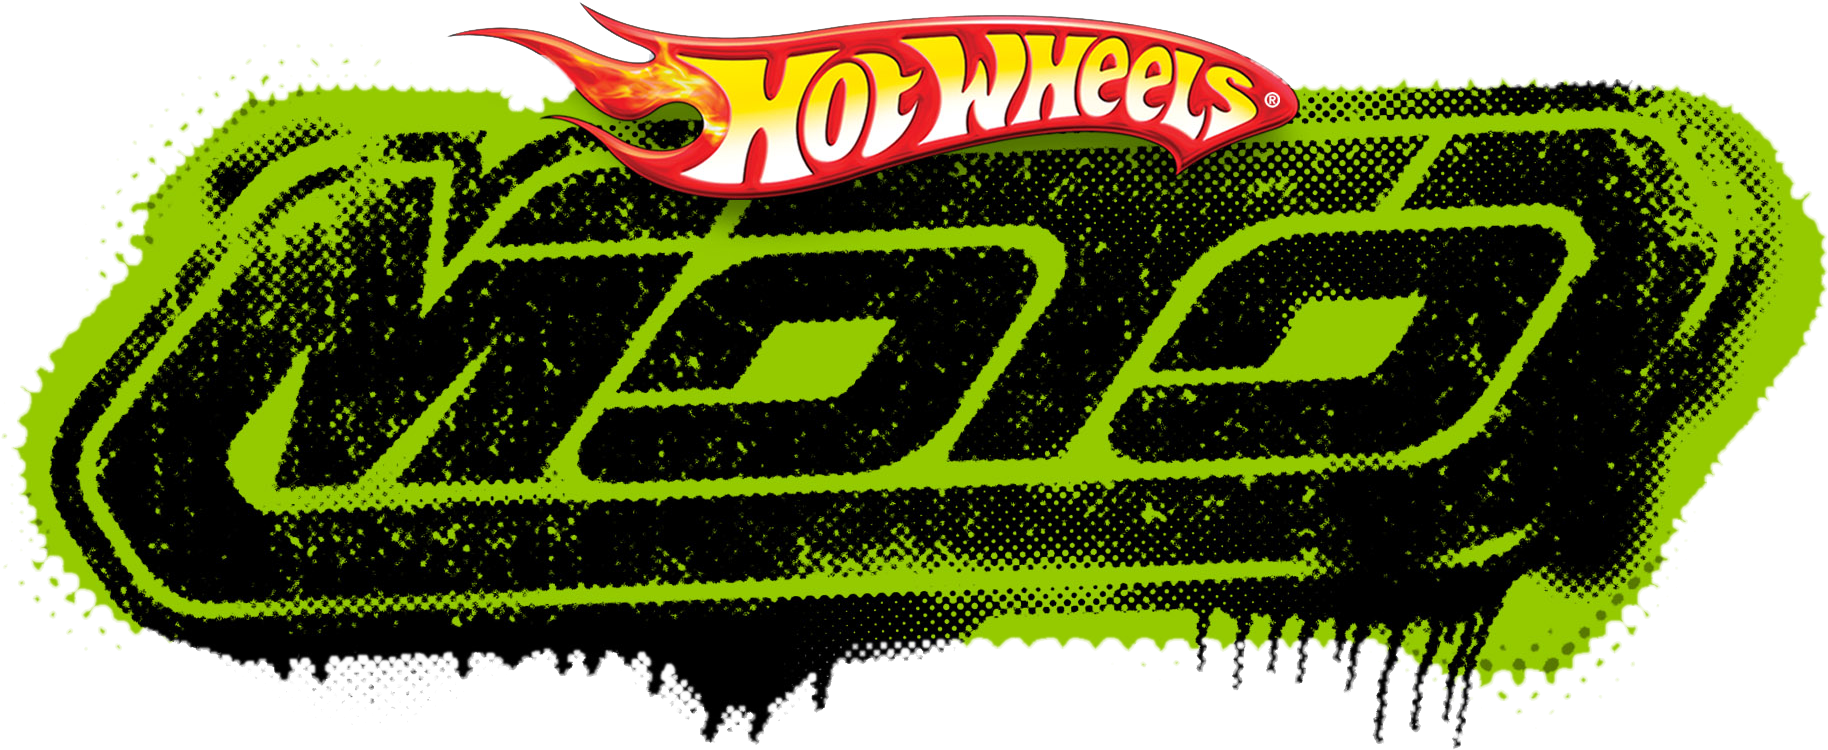 Hot Wheels Flaming Logo PNG image